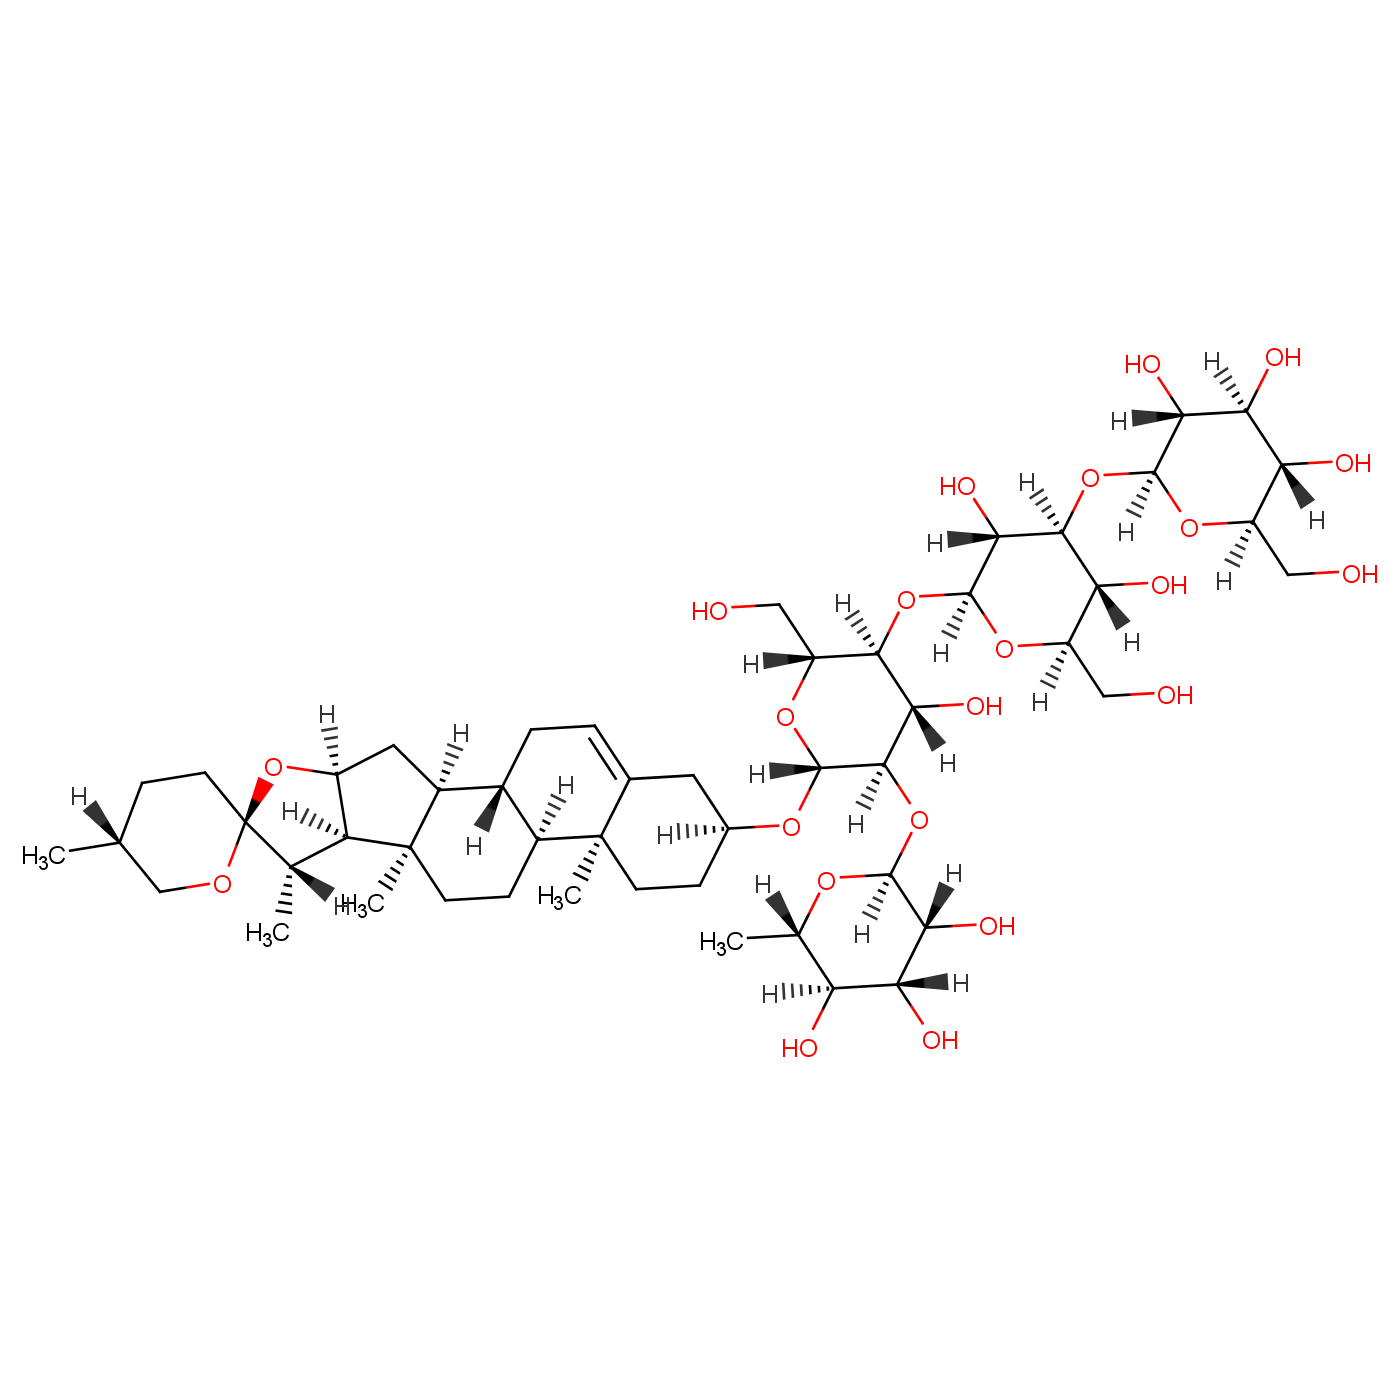 β-D-Glucopyranoside, (3β,25R)-spirost-5-en-3-yl O-β-D-glucopyranosyl-(1→3)-O-β-D-glucopyranosyl-(1→4)-O-[6-deoxy-α-L-mannopyranosyl-(1→2)]-